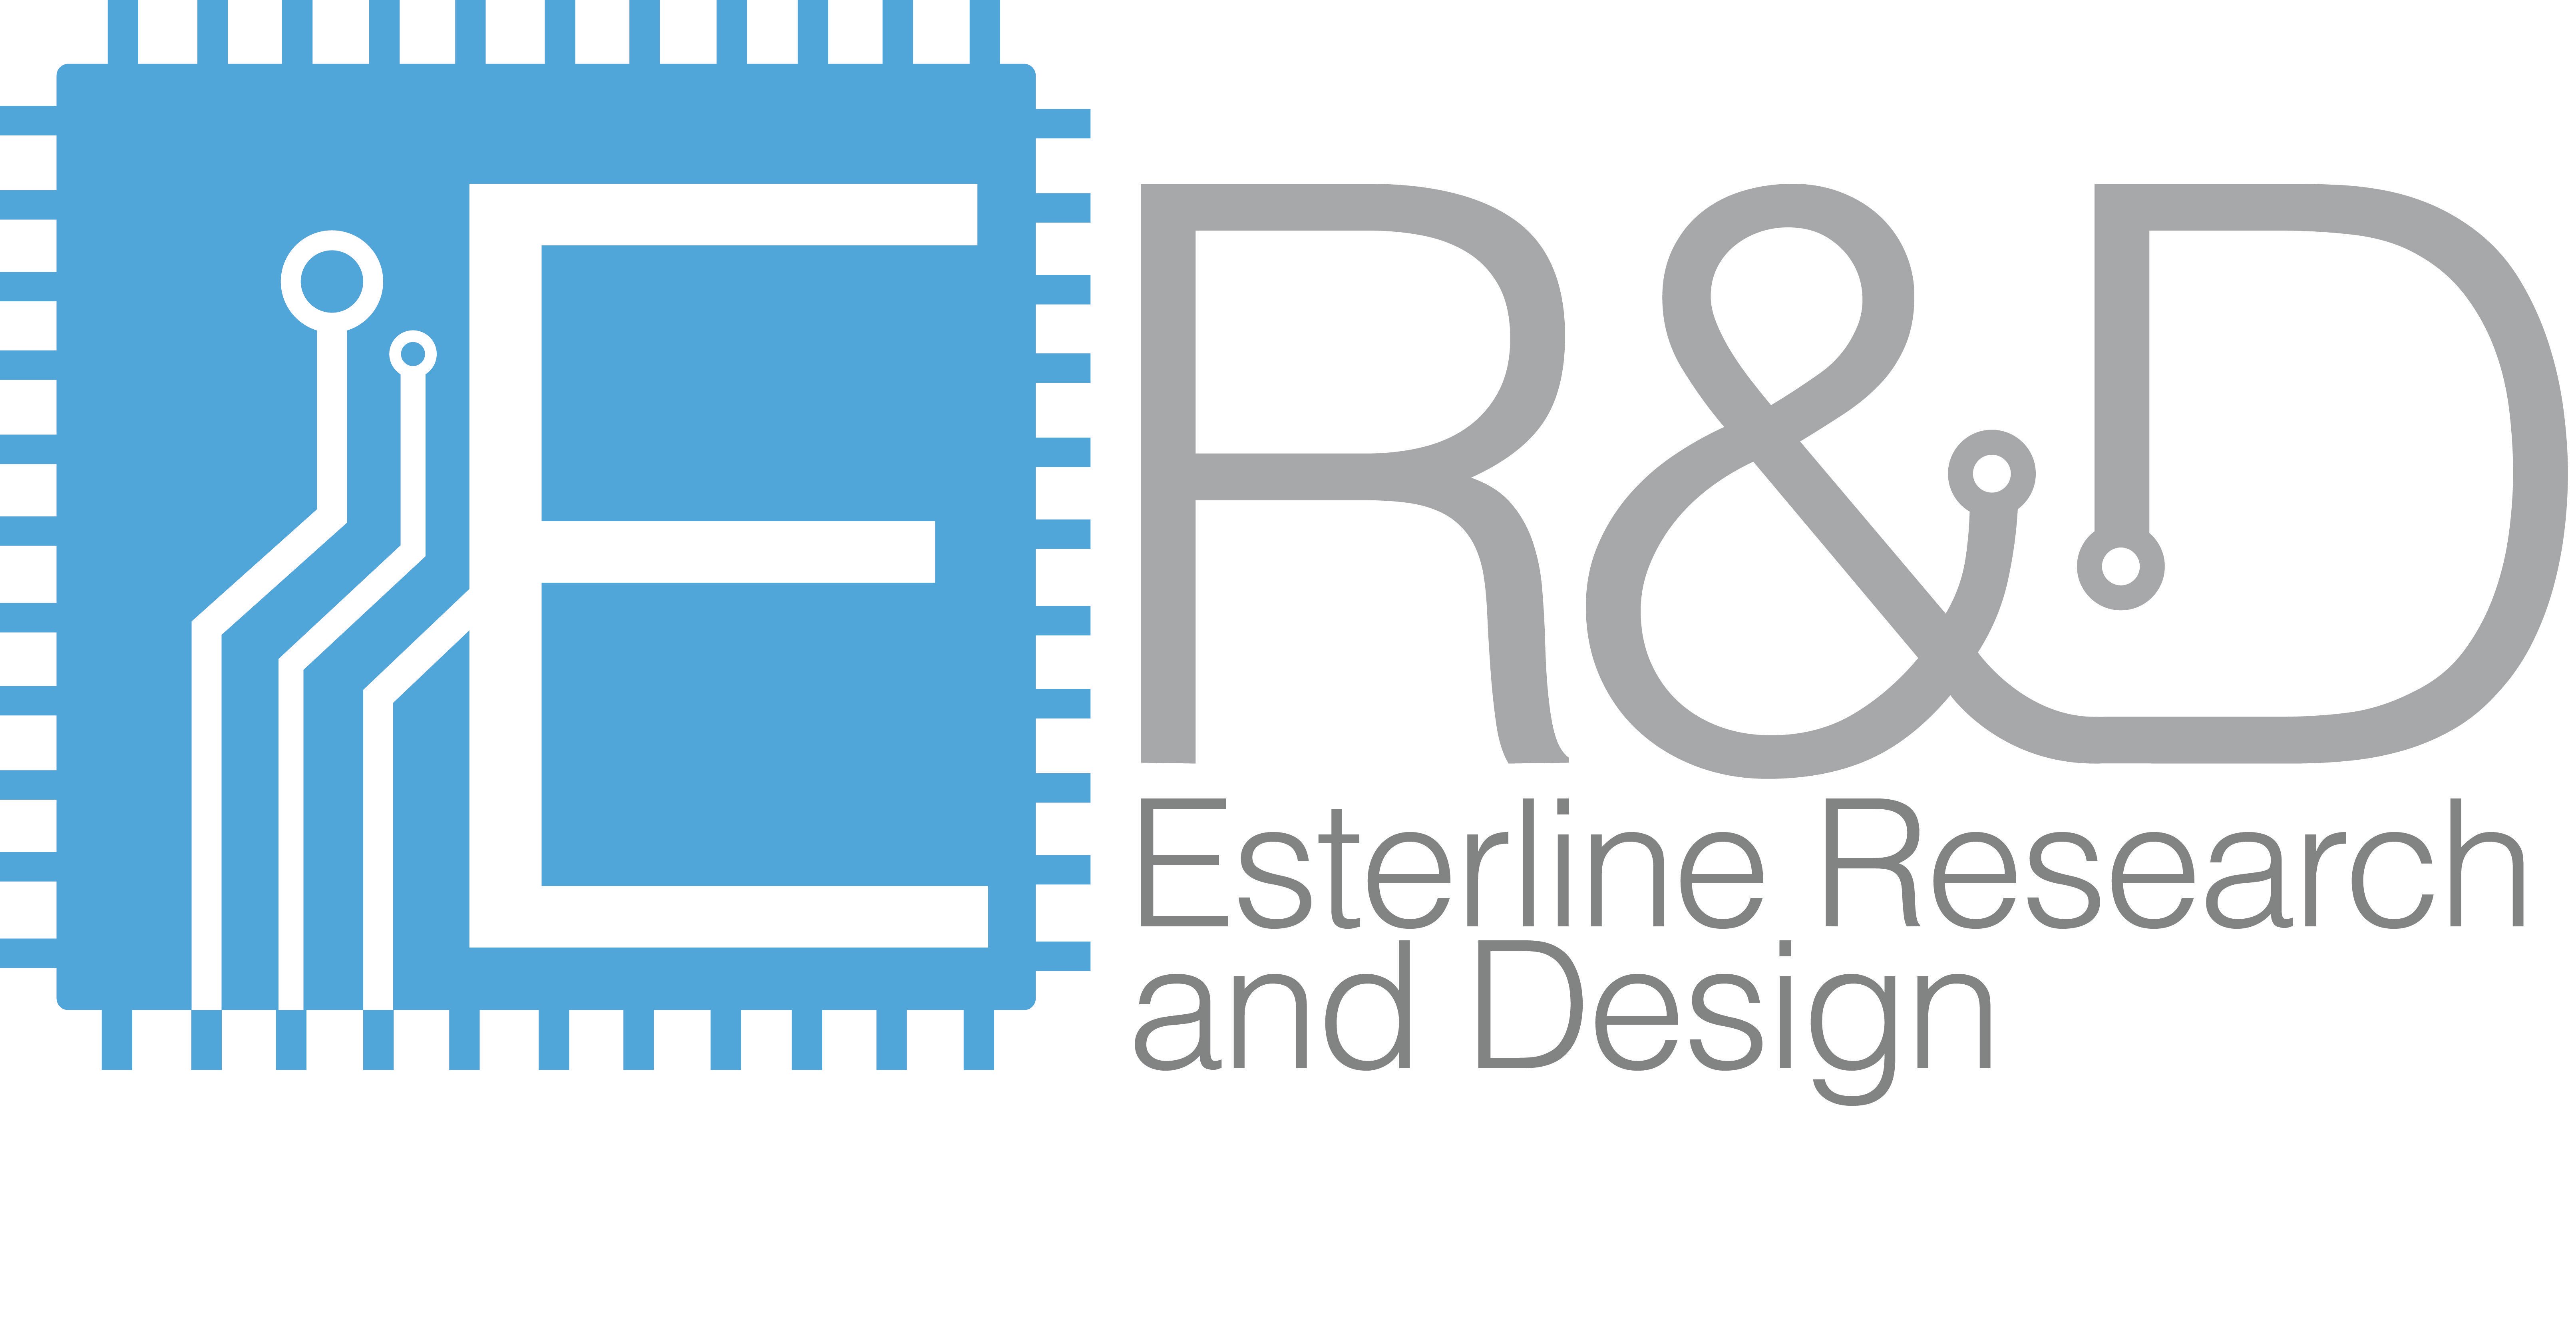 ERD Logo - Good branding is good practice. We are very happy with our #ERD logo ...